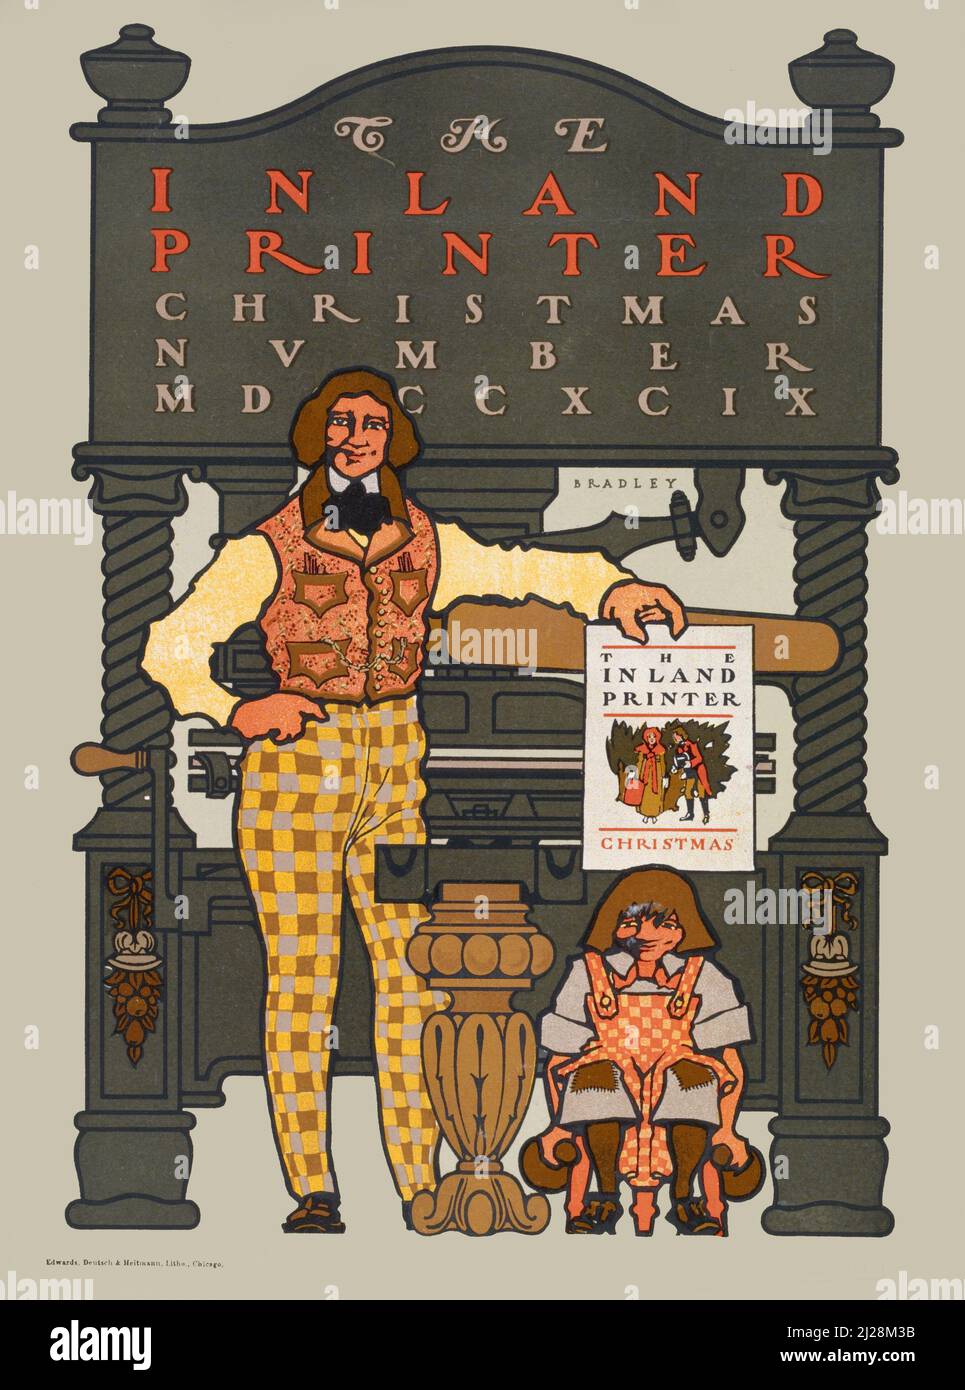 Will Bradley Artwork - der Binnendrucker. Weihnachtsnummer MDCCXCIX (1894-1896) American Art Nouveau - Alte und Vintage Magazin-Cover. Stockfoto